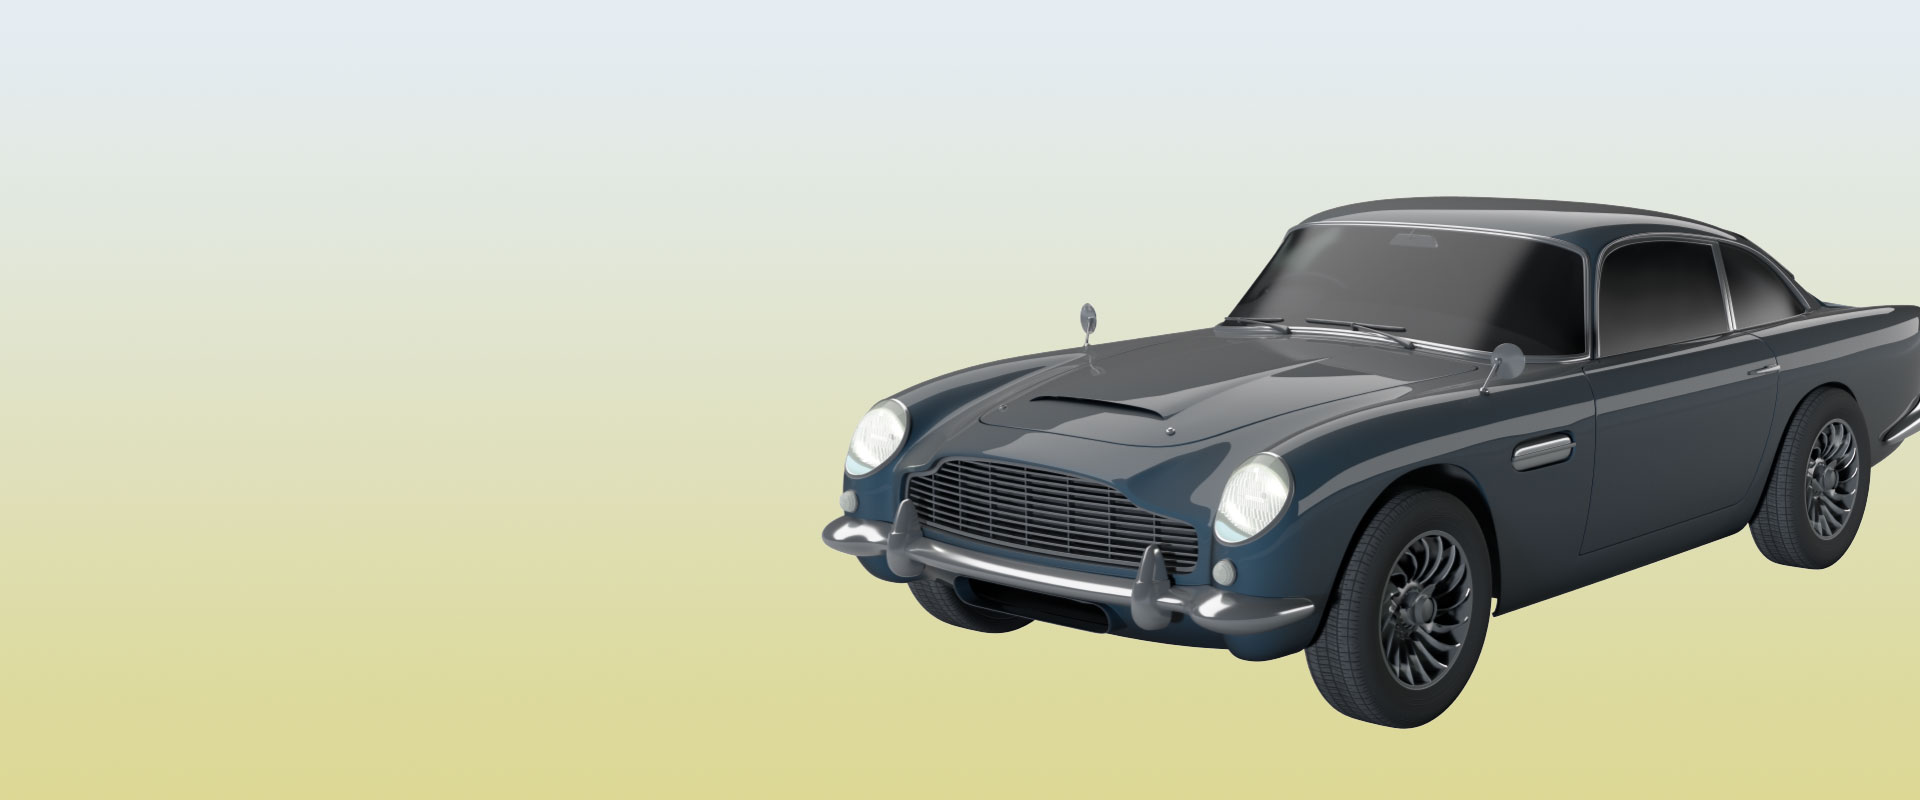 Visualisierung eines Aston Martin